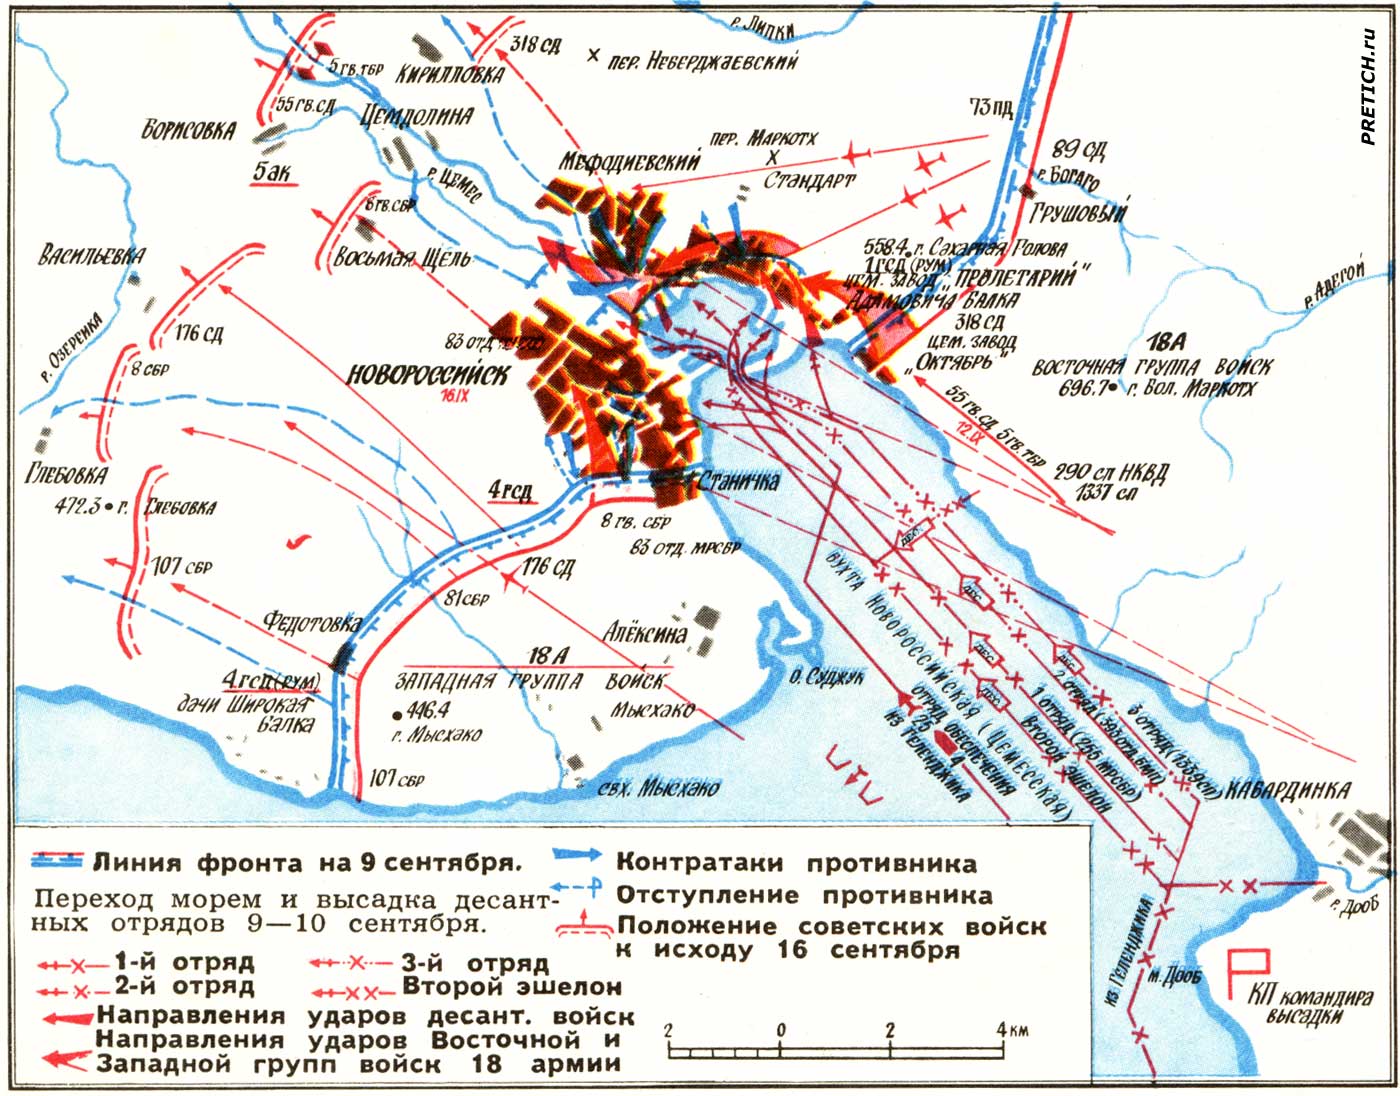 Новороссийская операция 9-16 сентября 1943 года